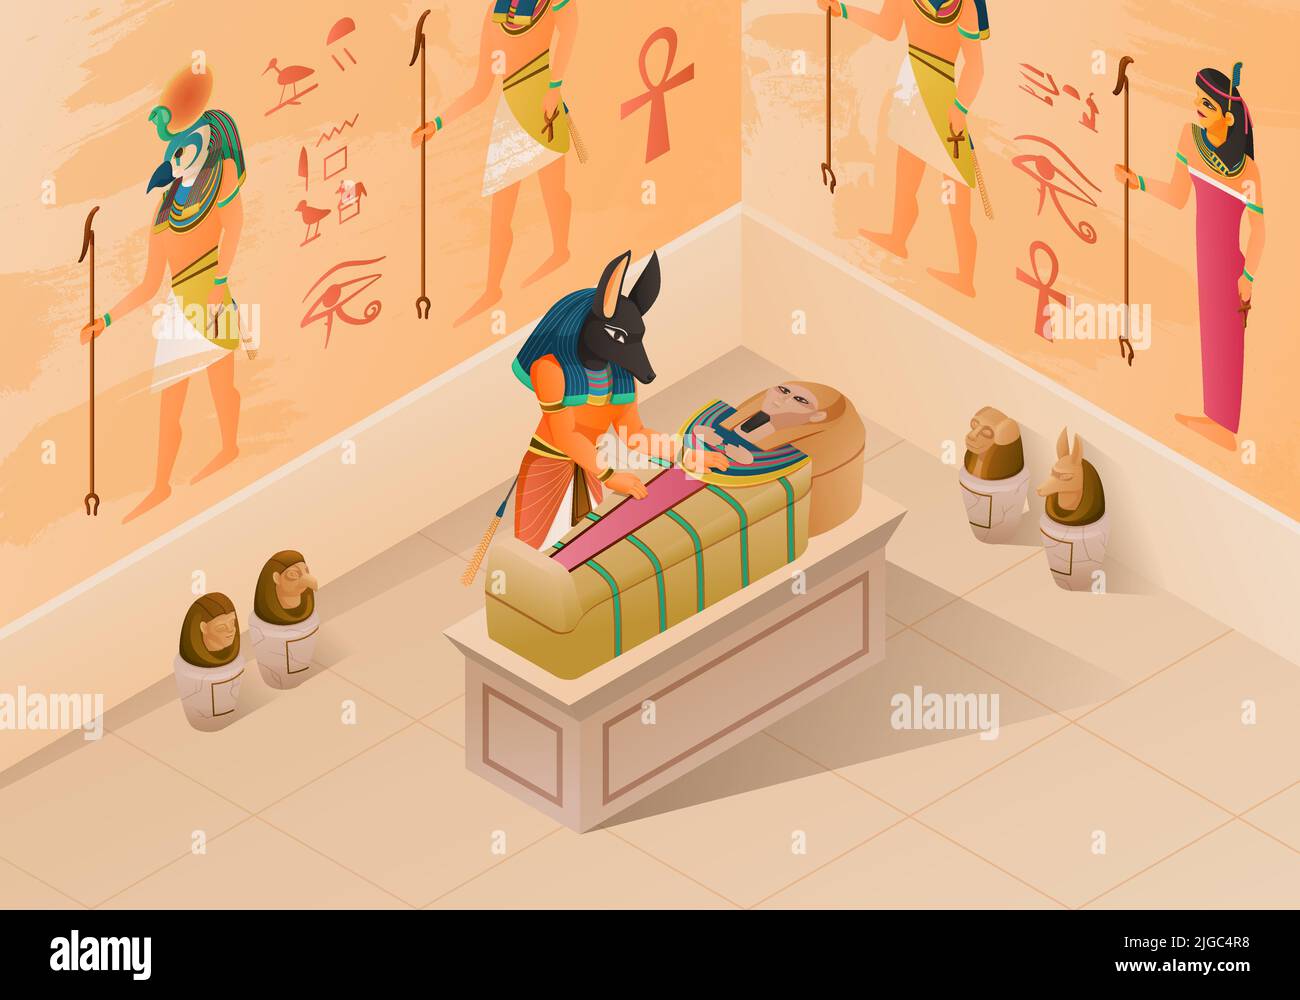 Ägypten isometrische Zusammensetzung demonstriert Mumifizierung Prozess mit anubis und pharao Sarkophag an Geschichte Wandmalerei Hintergrund Vektor illustrat Stock Vektor